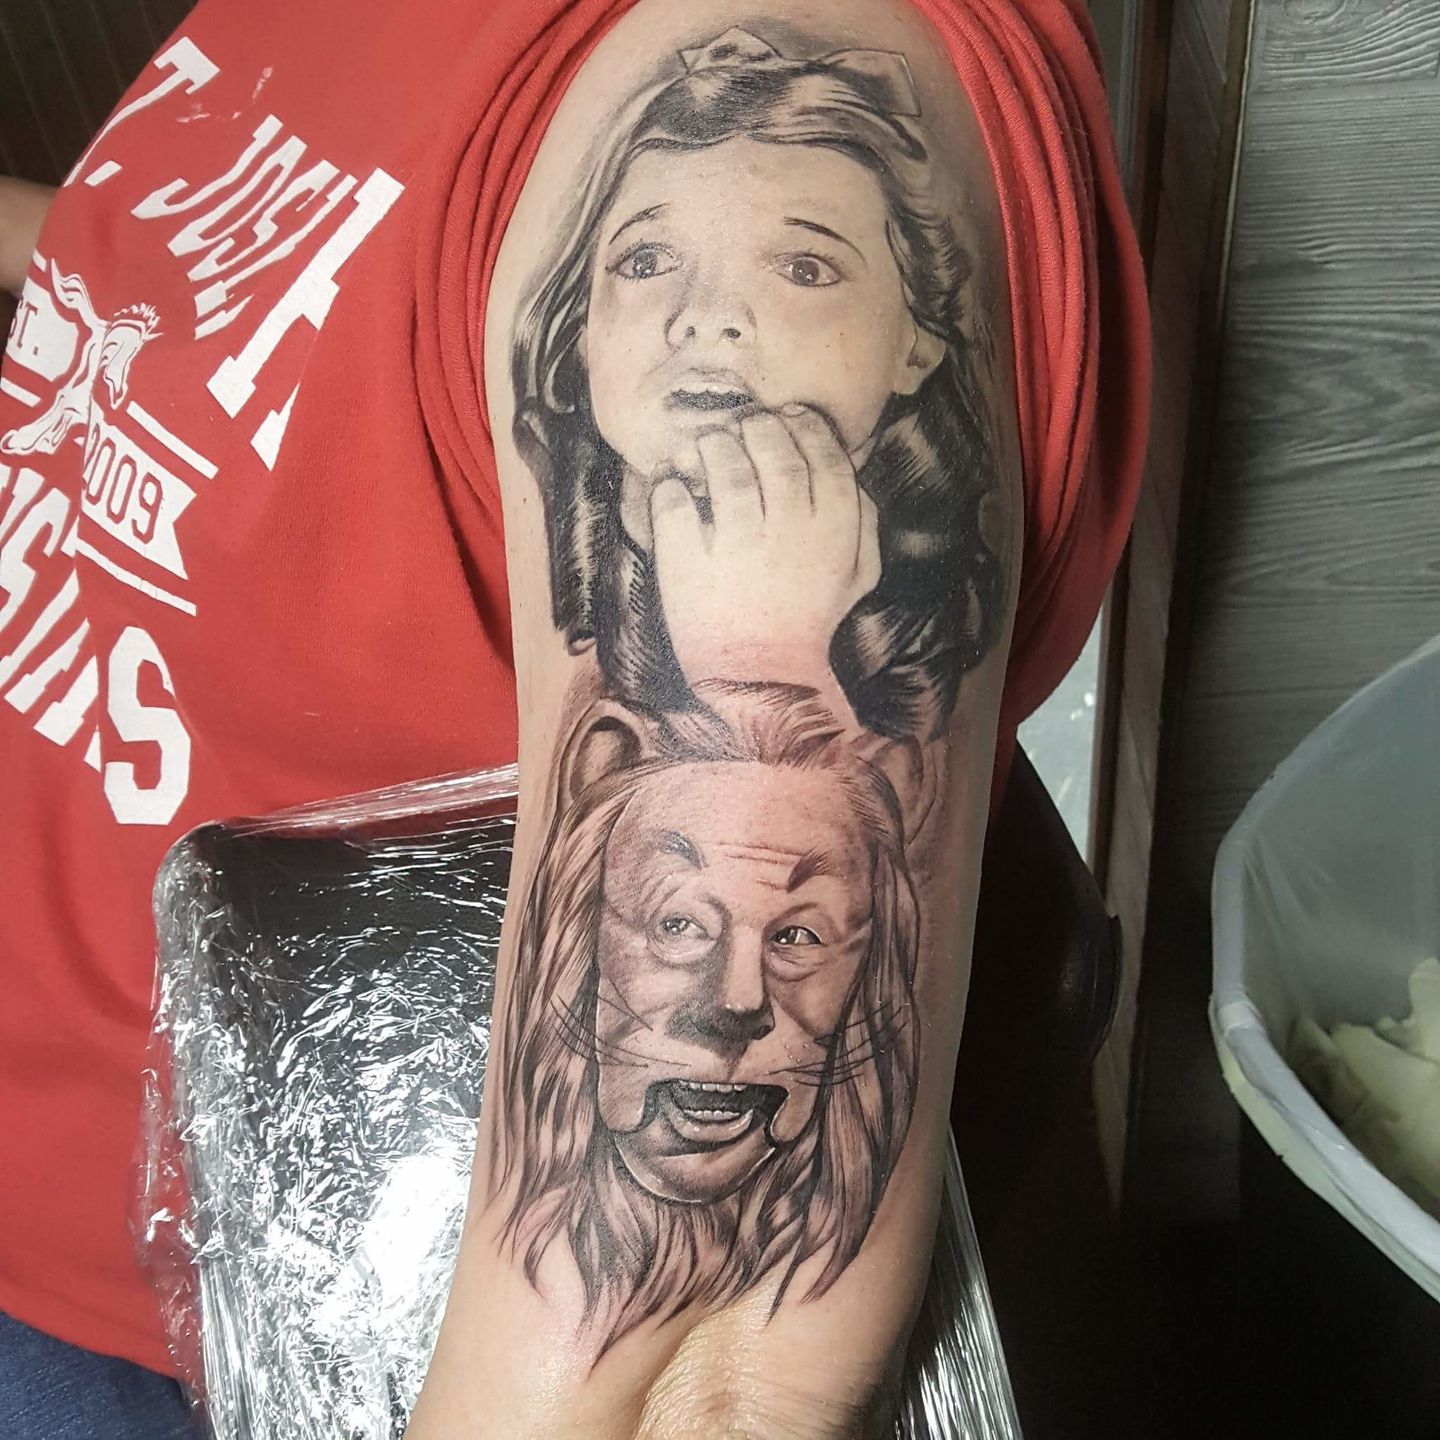 Wizard of Oz tattoo by NevermoreInk on DeviantArt